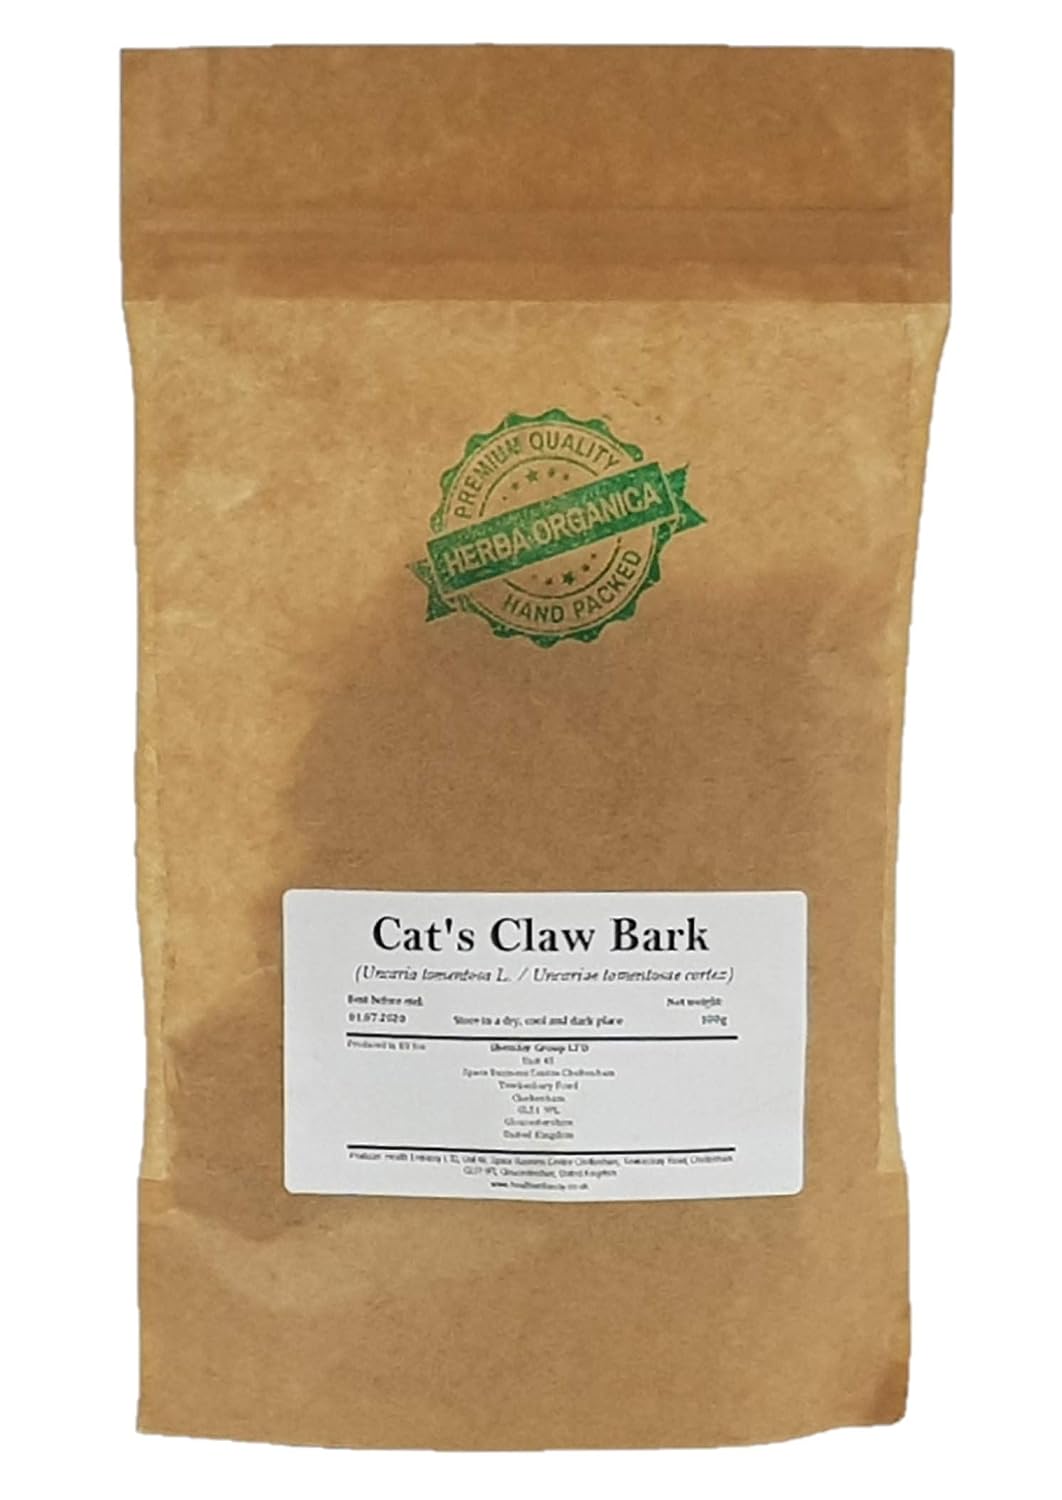 Cat's Claw Bark - Uncaria Tomentosa L # Herba Organica # Uña de Gato, Vilcacora